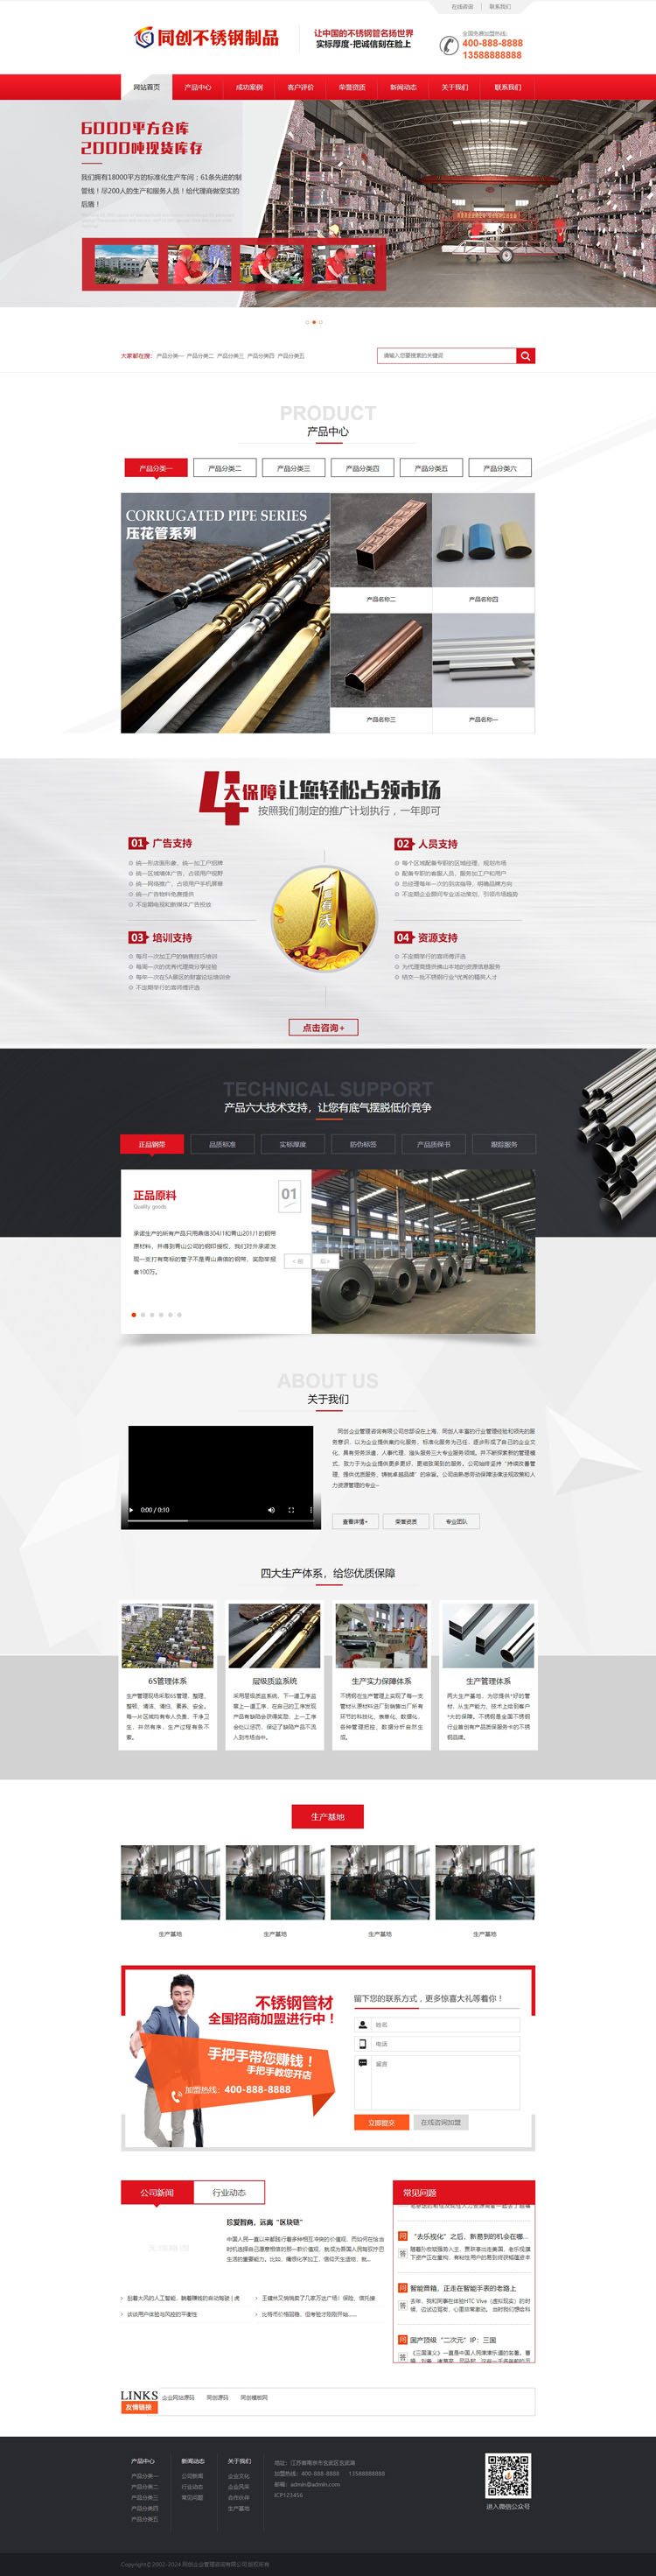 钢材钢管网站源码程序-XX007-2